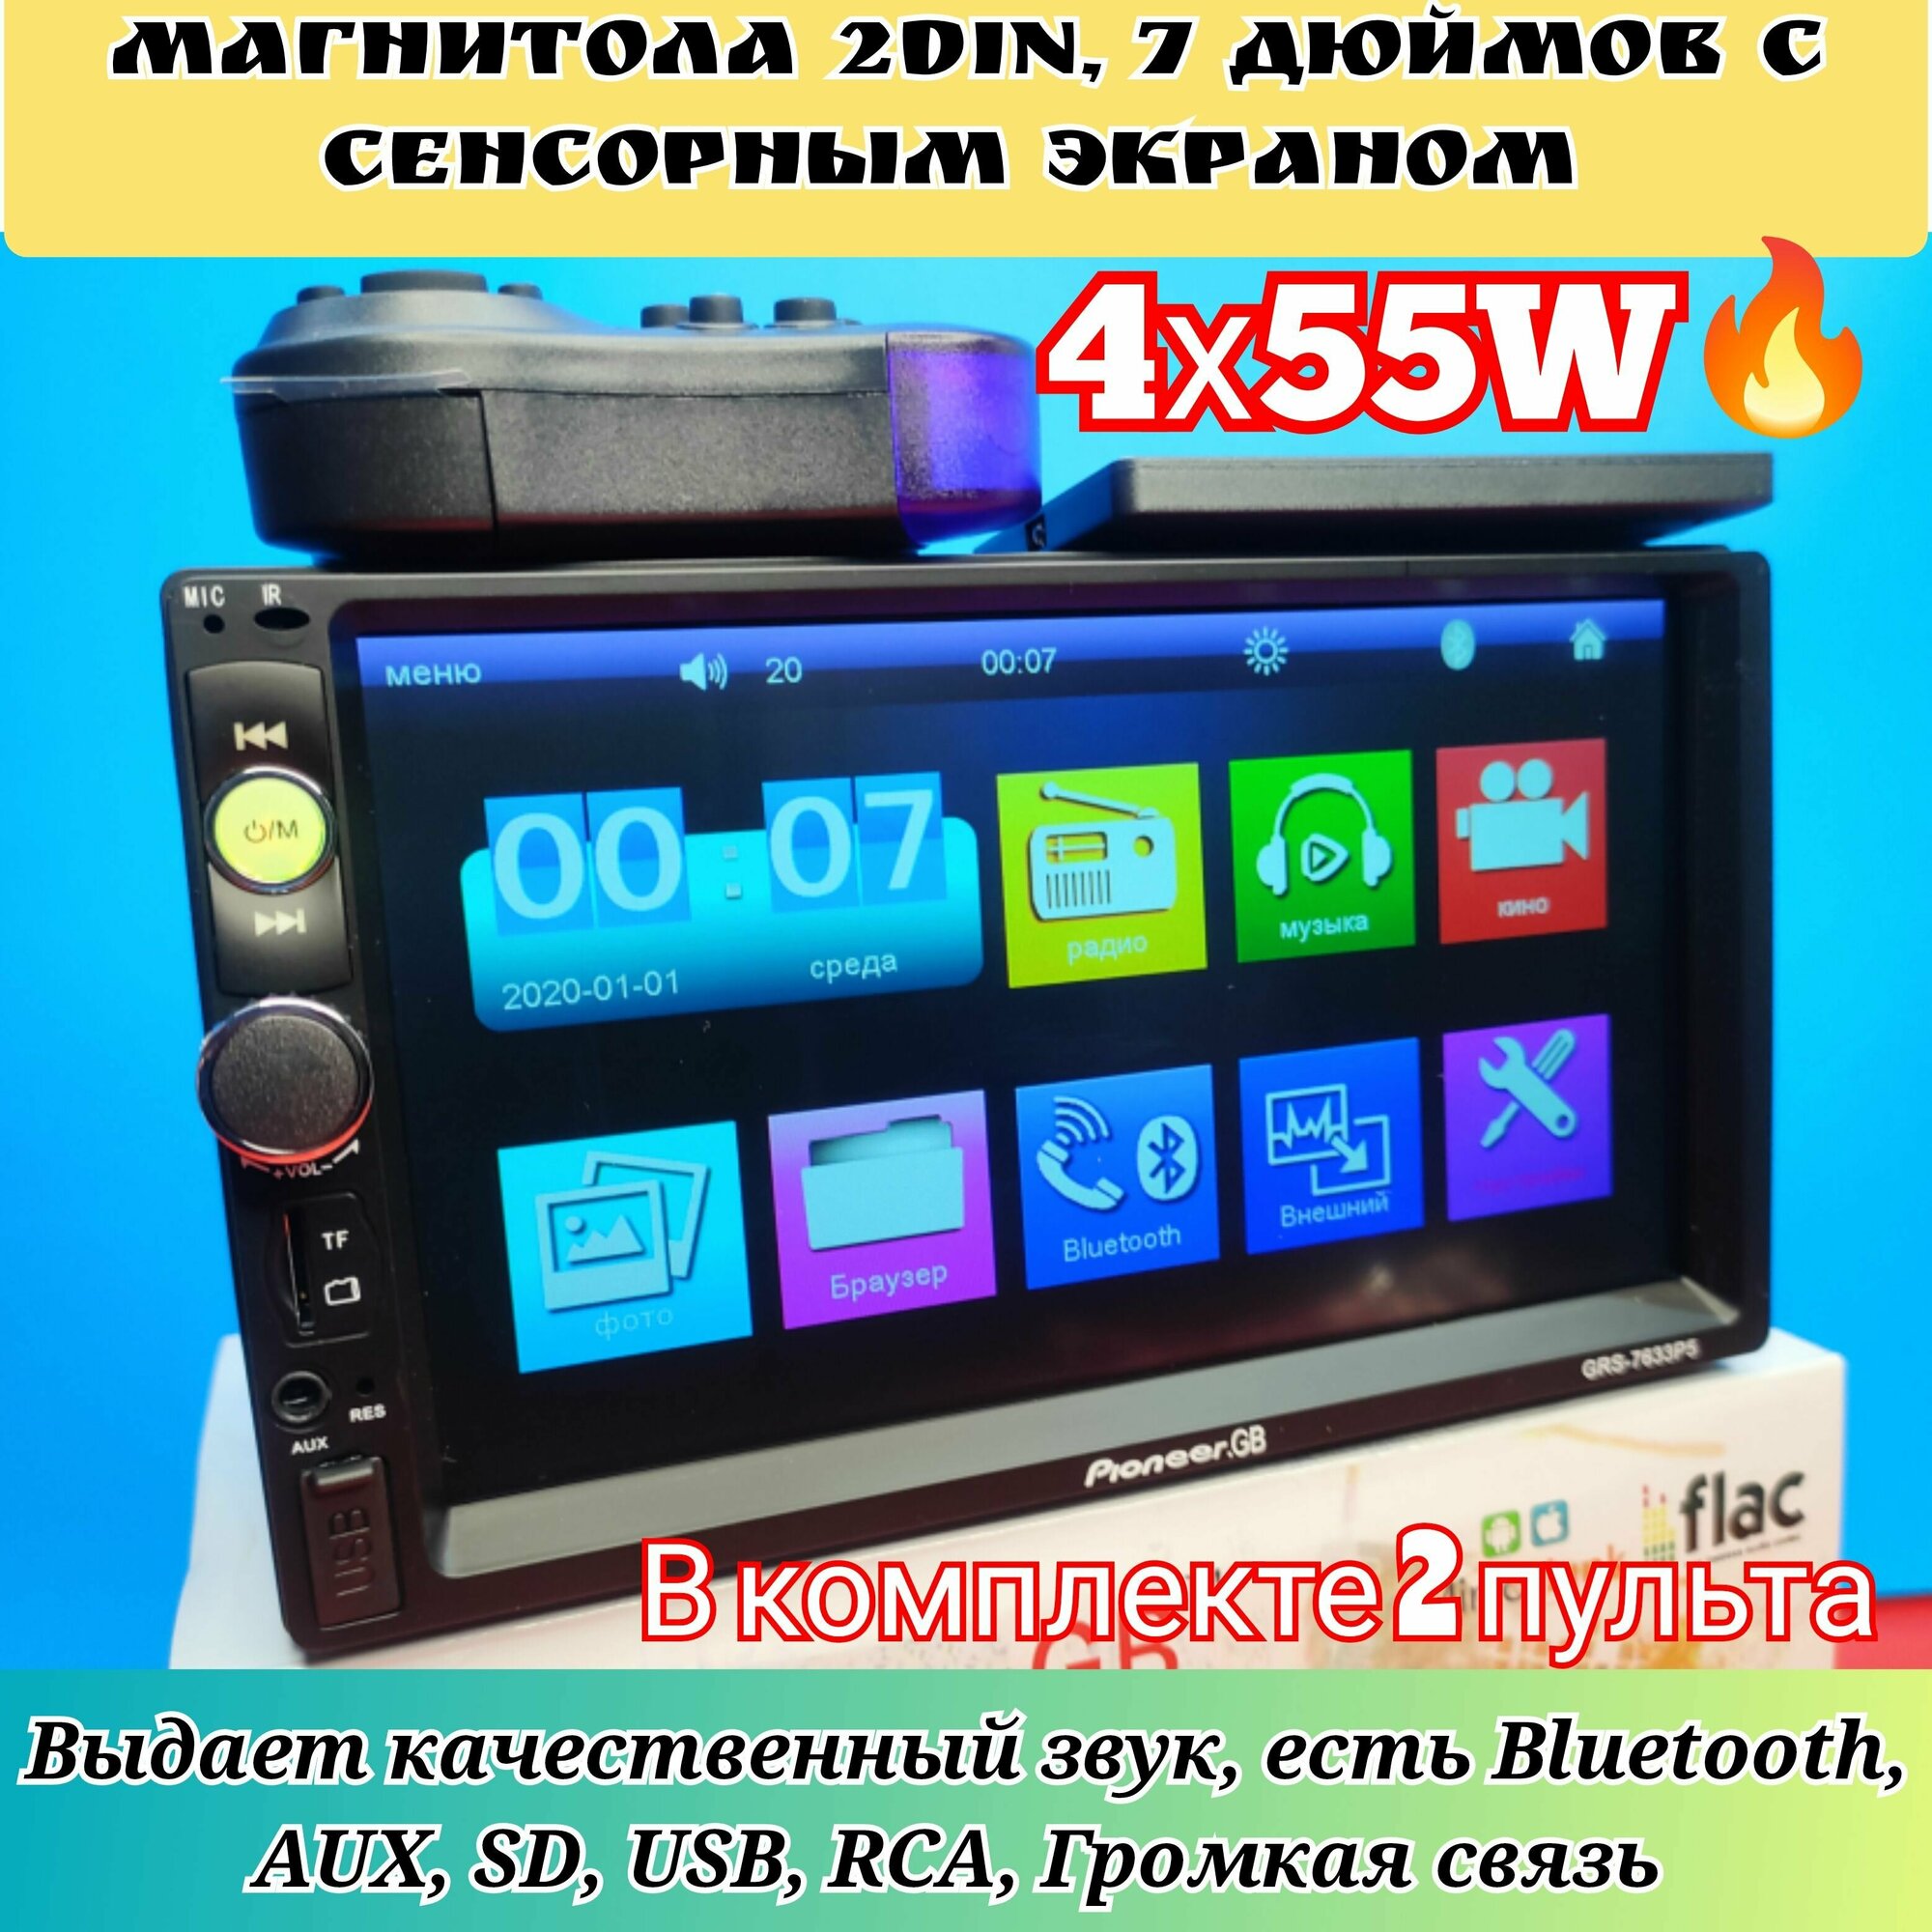 Автомагнитола 2 Din 7 дюймовый сенсорный дисплей 55W Pioneer / Bluetooth / AUX / USB / SD / громкая связь